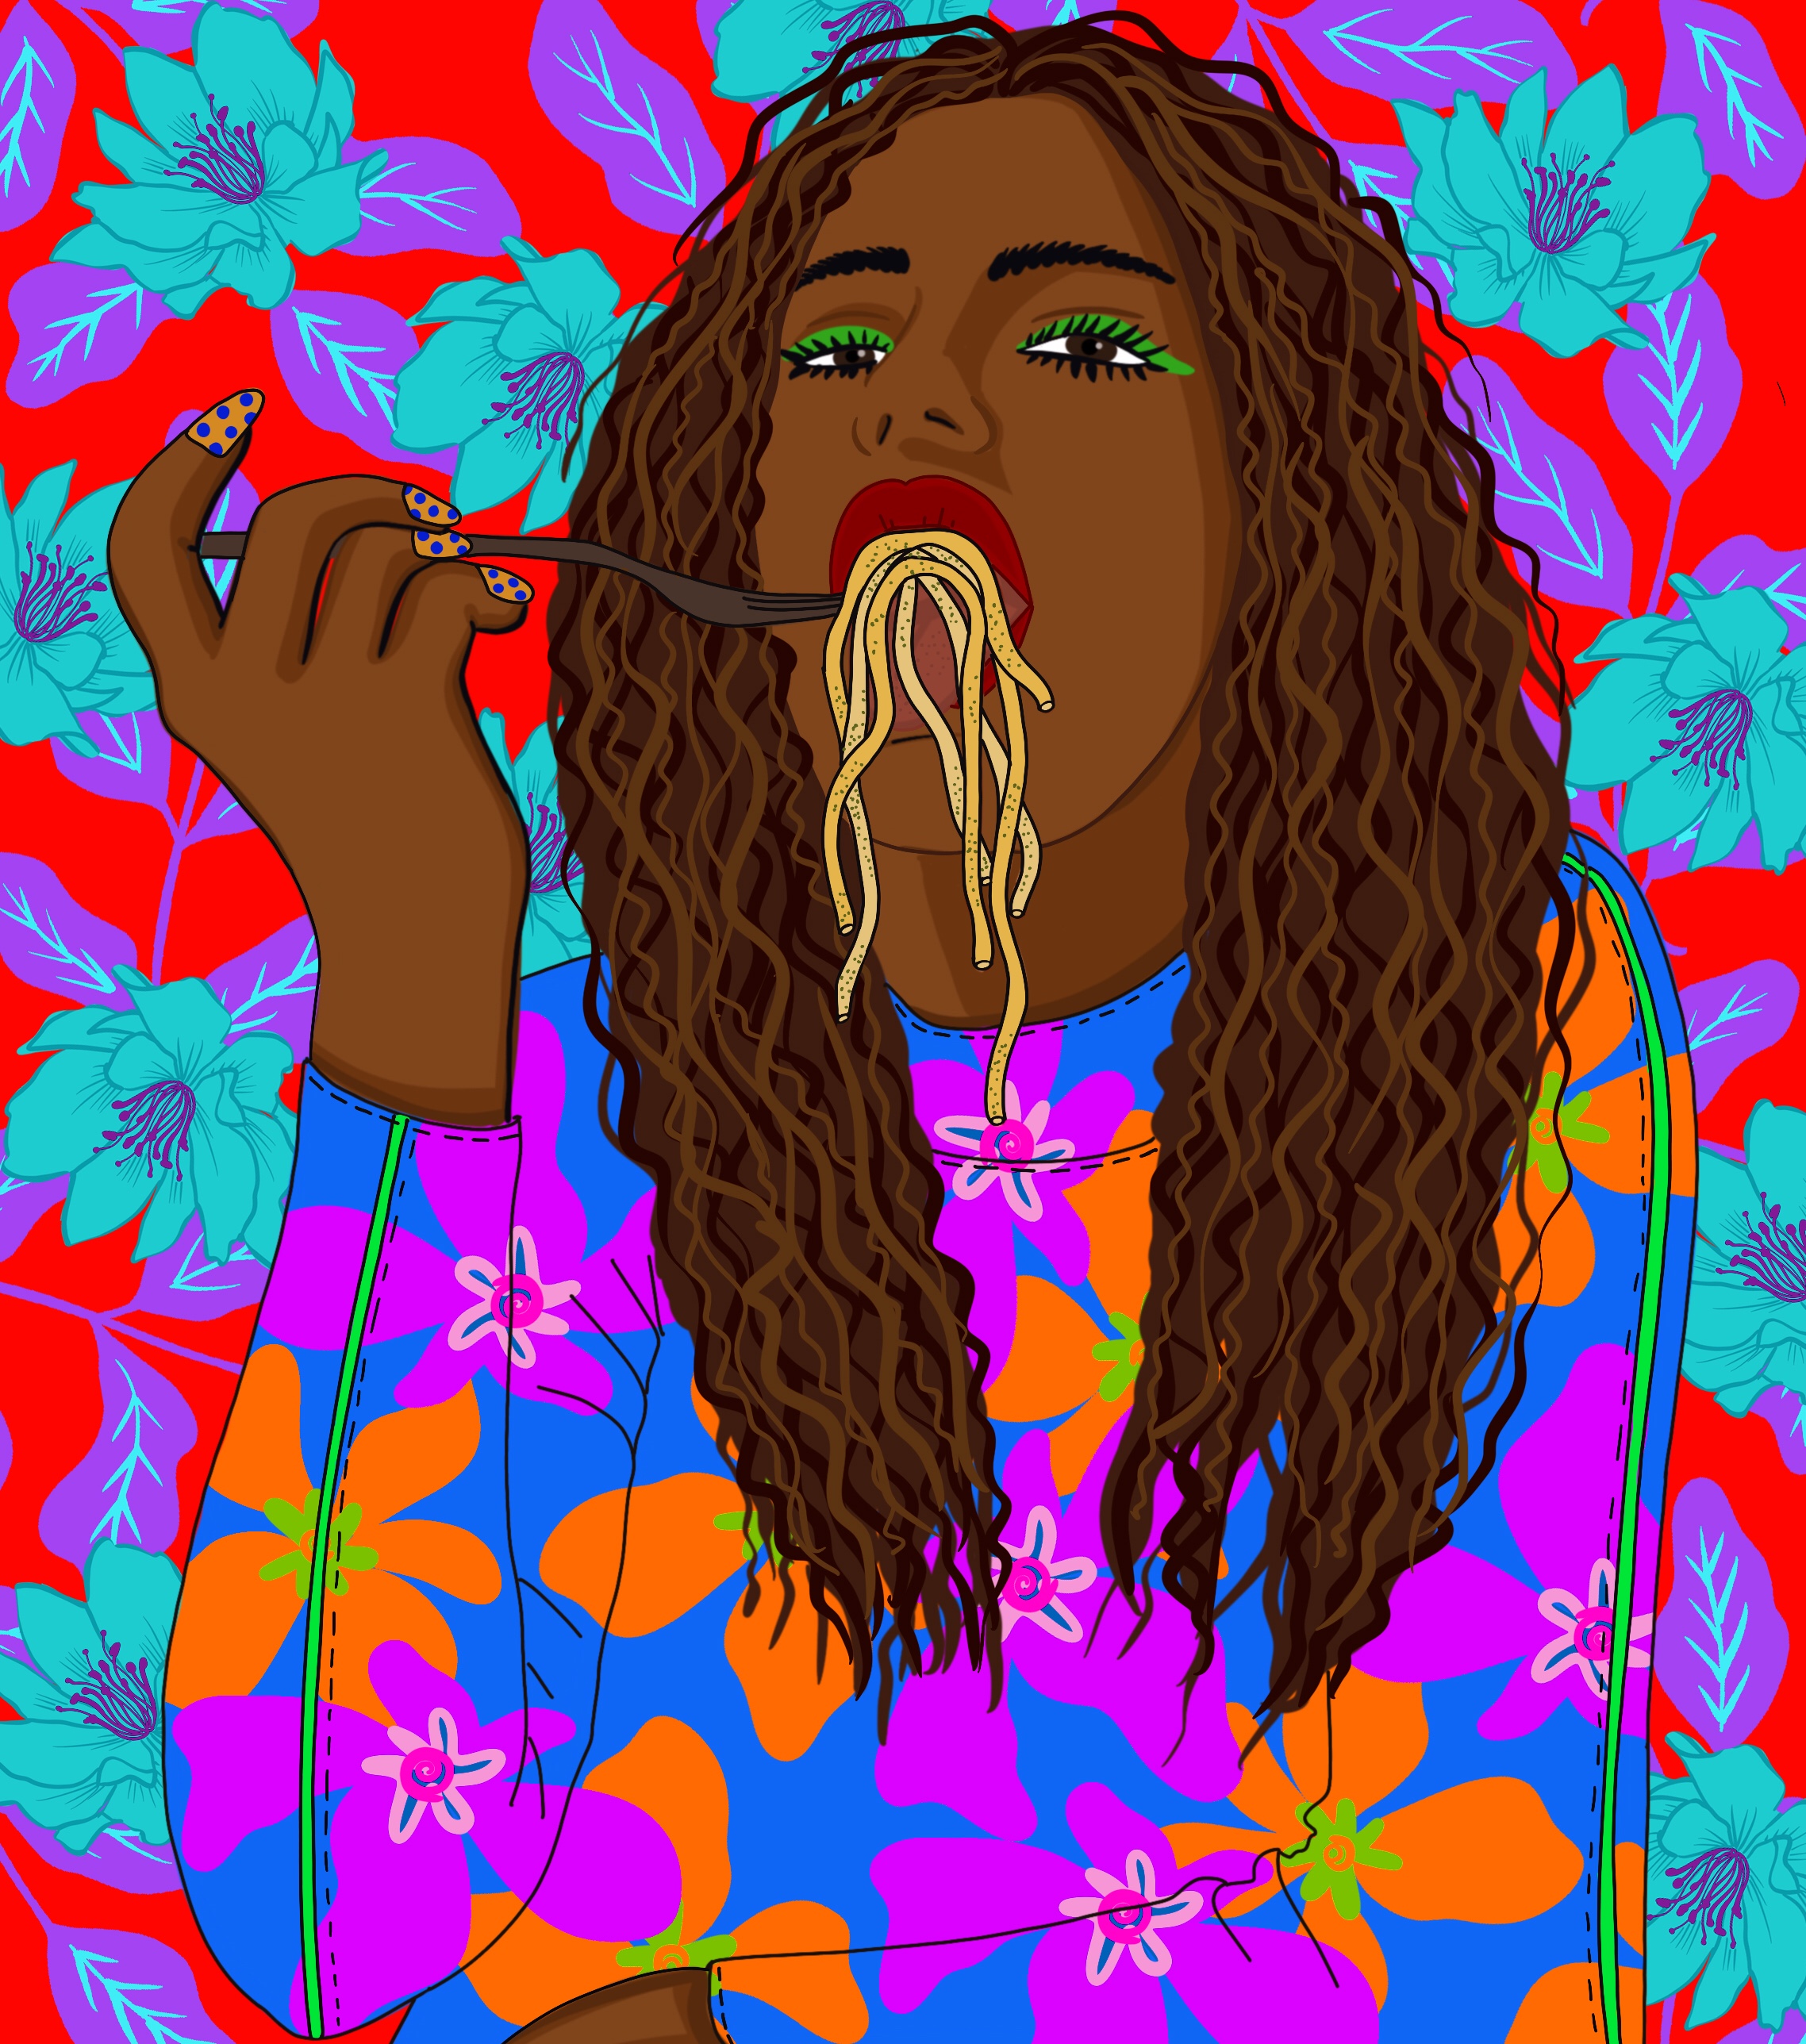 Spaghetti Girl